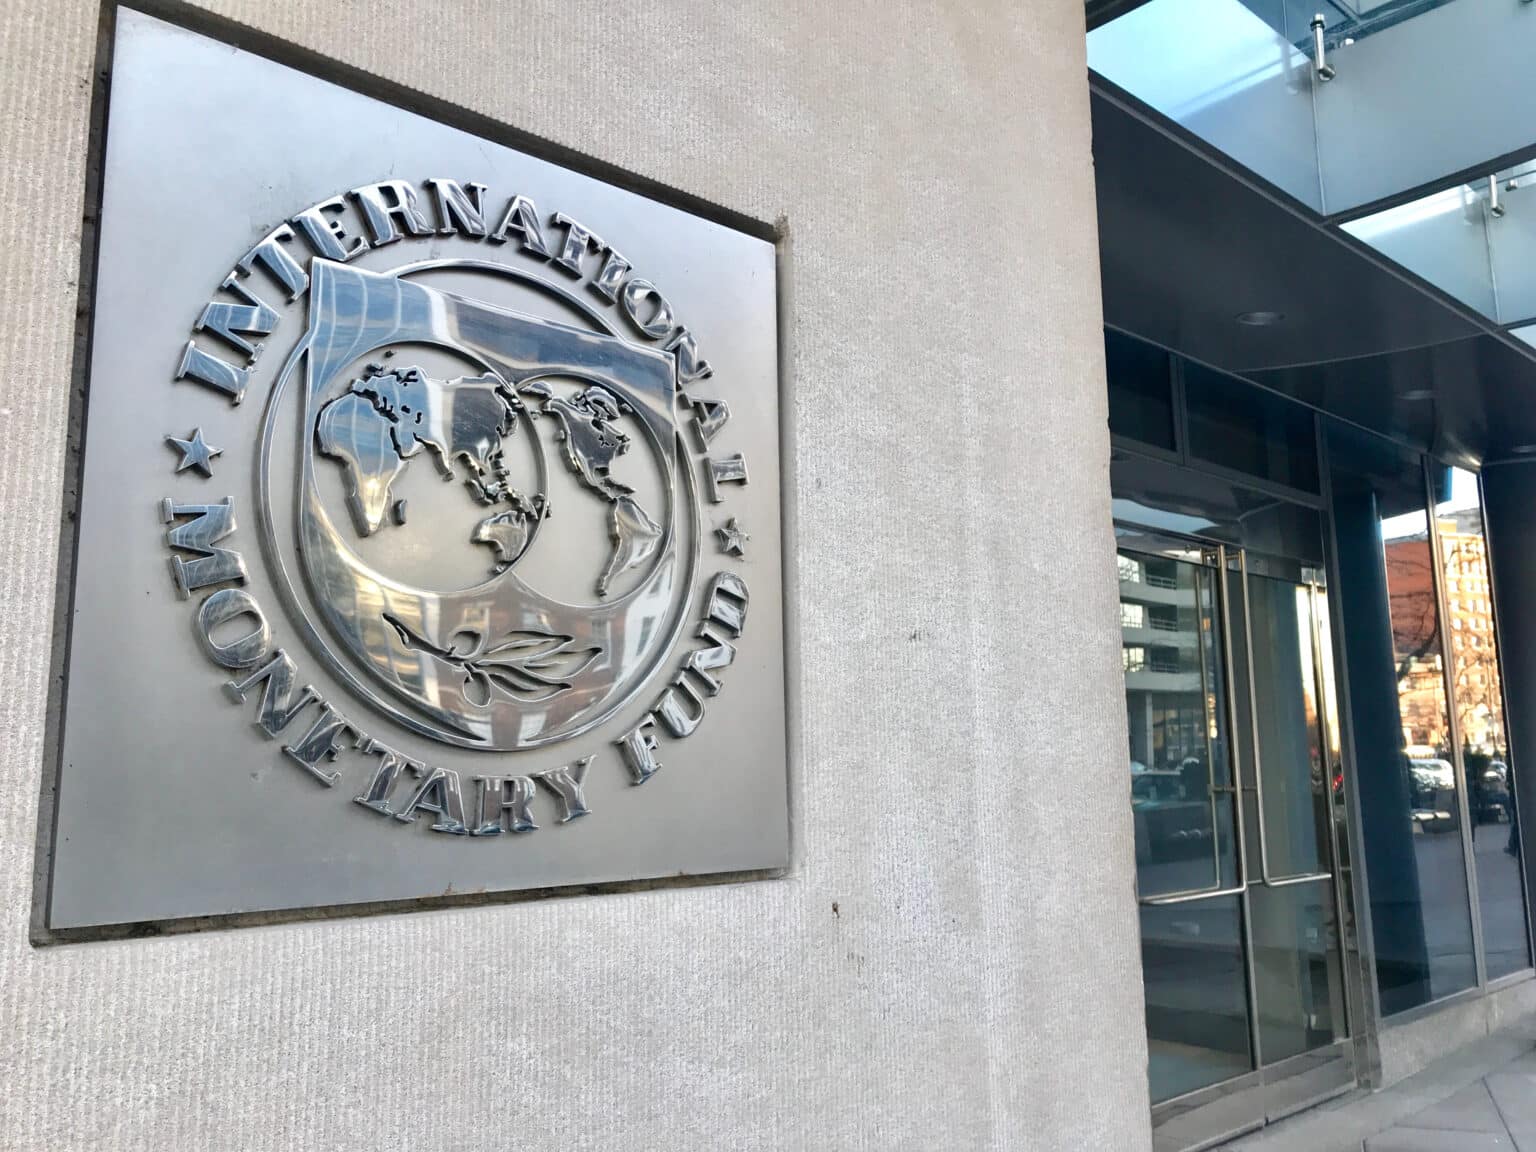 כלכלן בכיר בקרן המטבע הלאומית מרגיע: "הסיכון למיתון עולמי הוא מינימלי"